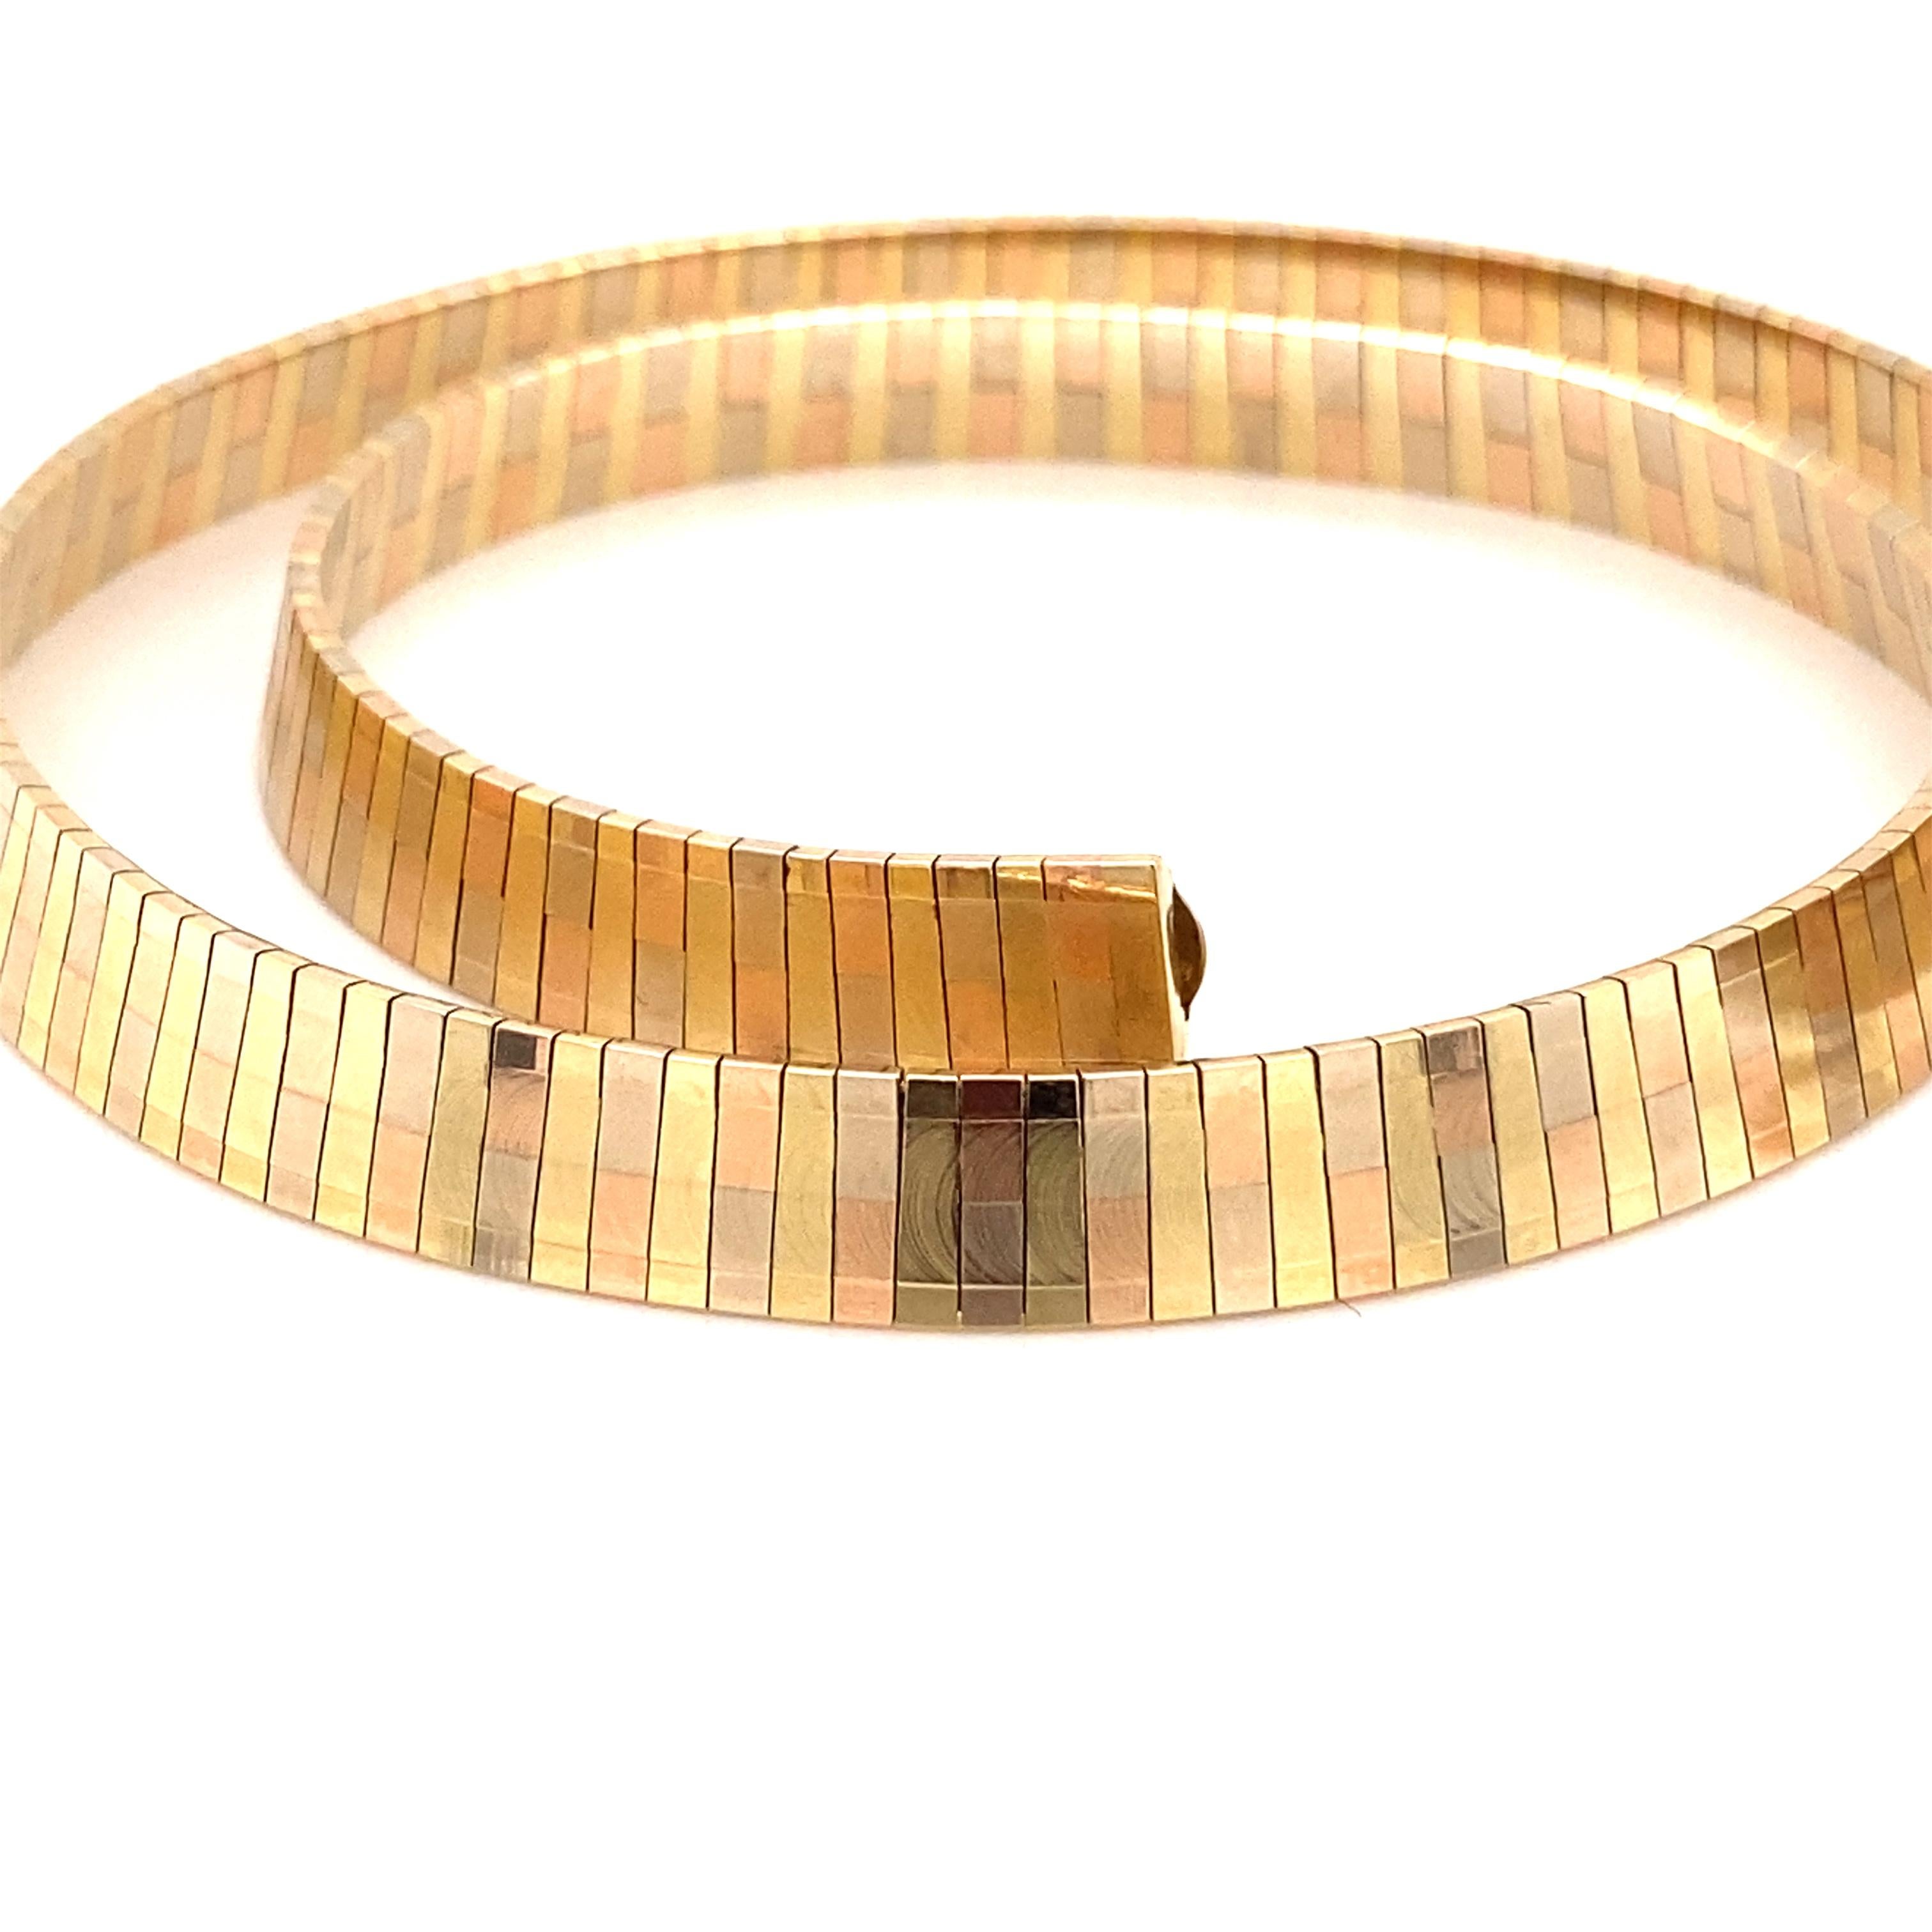 Vintage By 1980's 14K Yellow Gold Tri-Color Omega Choker Necklace - Die in Italien hergestellte Halskette hat abwechselnd Roségold, Gelbgold und Weißgold und liegt schön am Hals. Die Halskette ist 8 mm breit und verfügt über einen 8-fach gesicherten